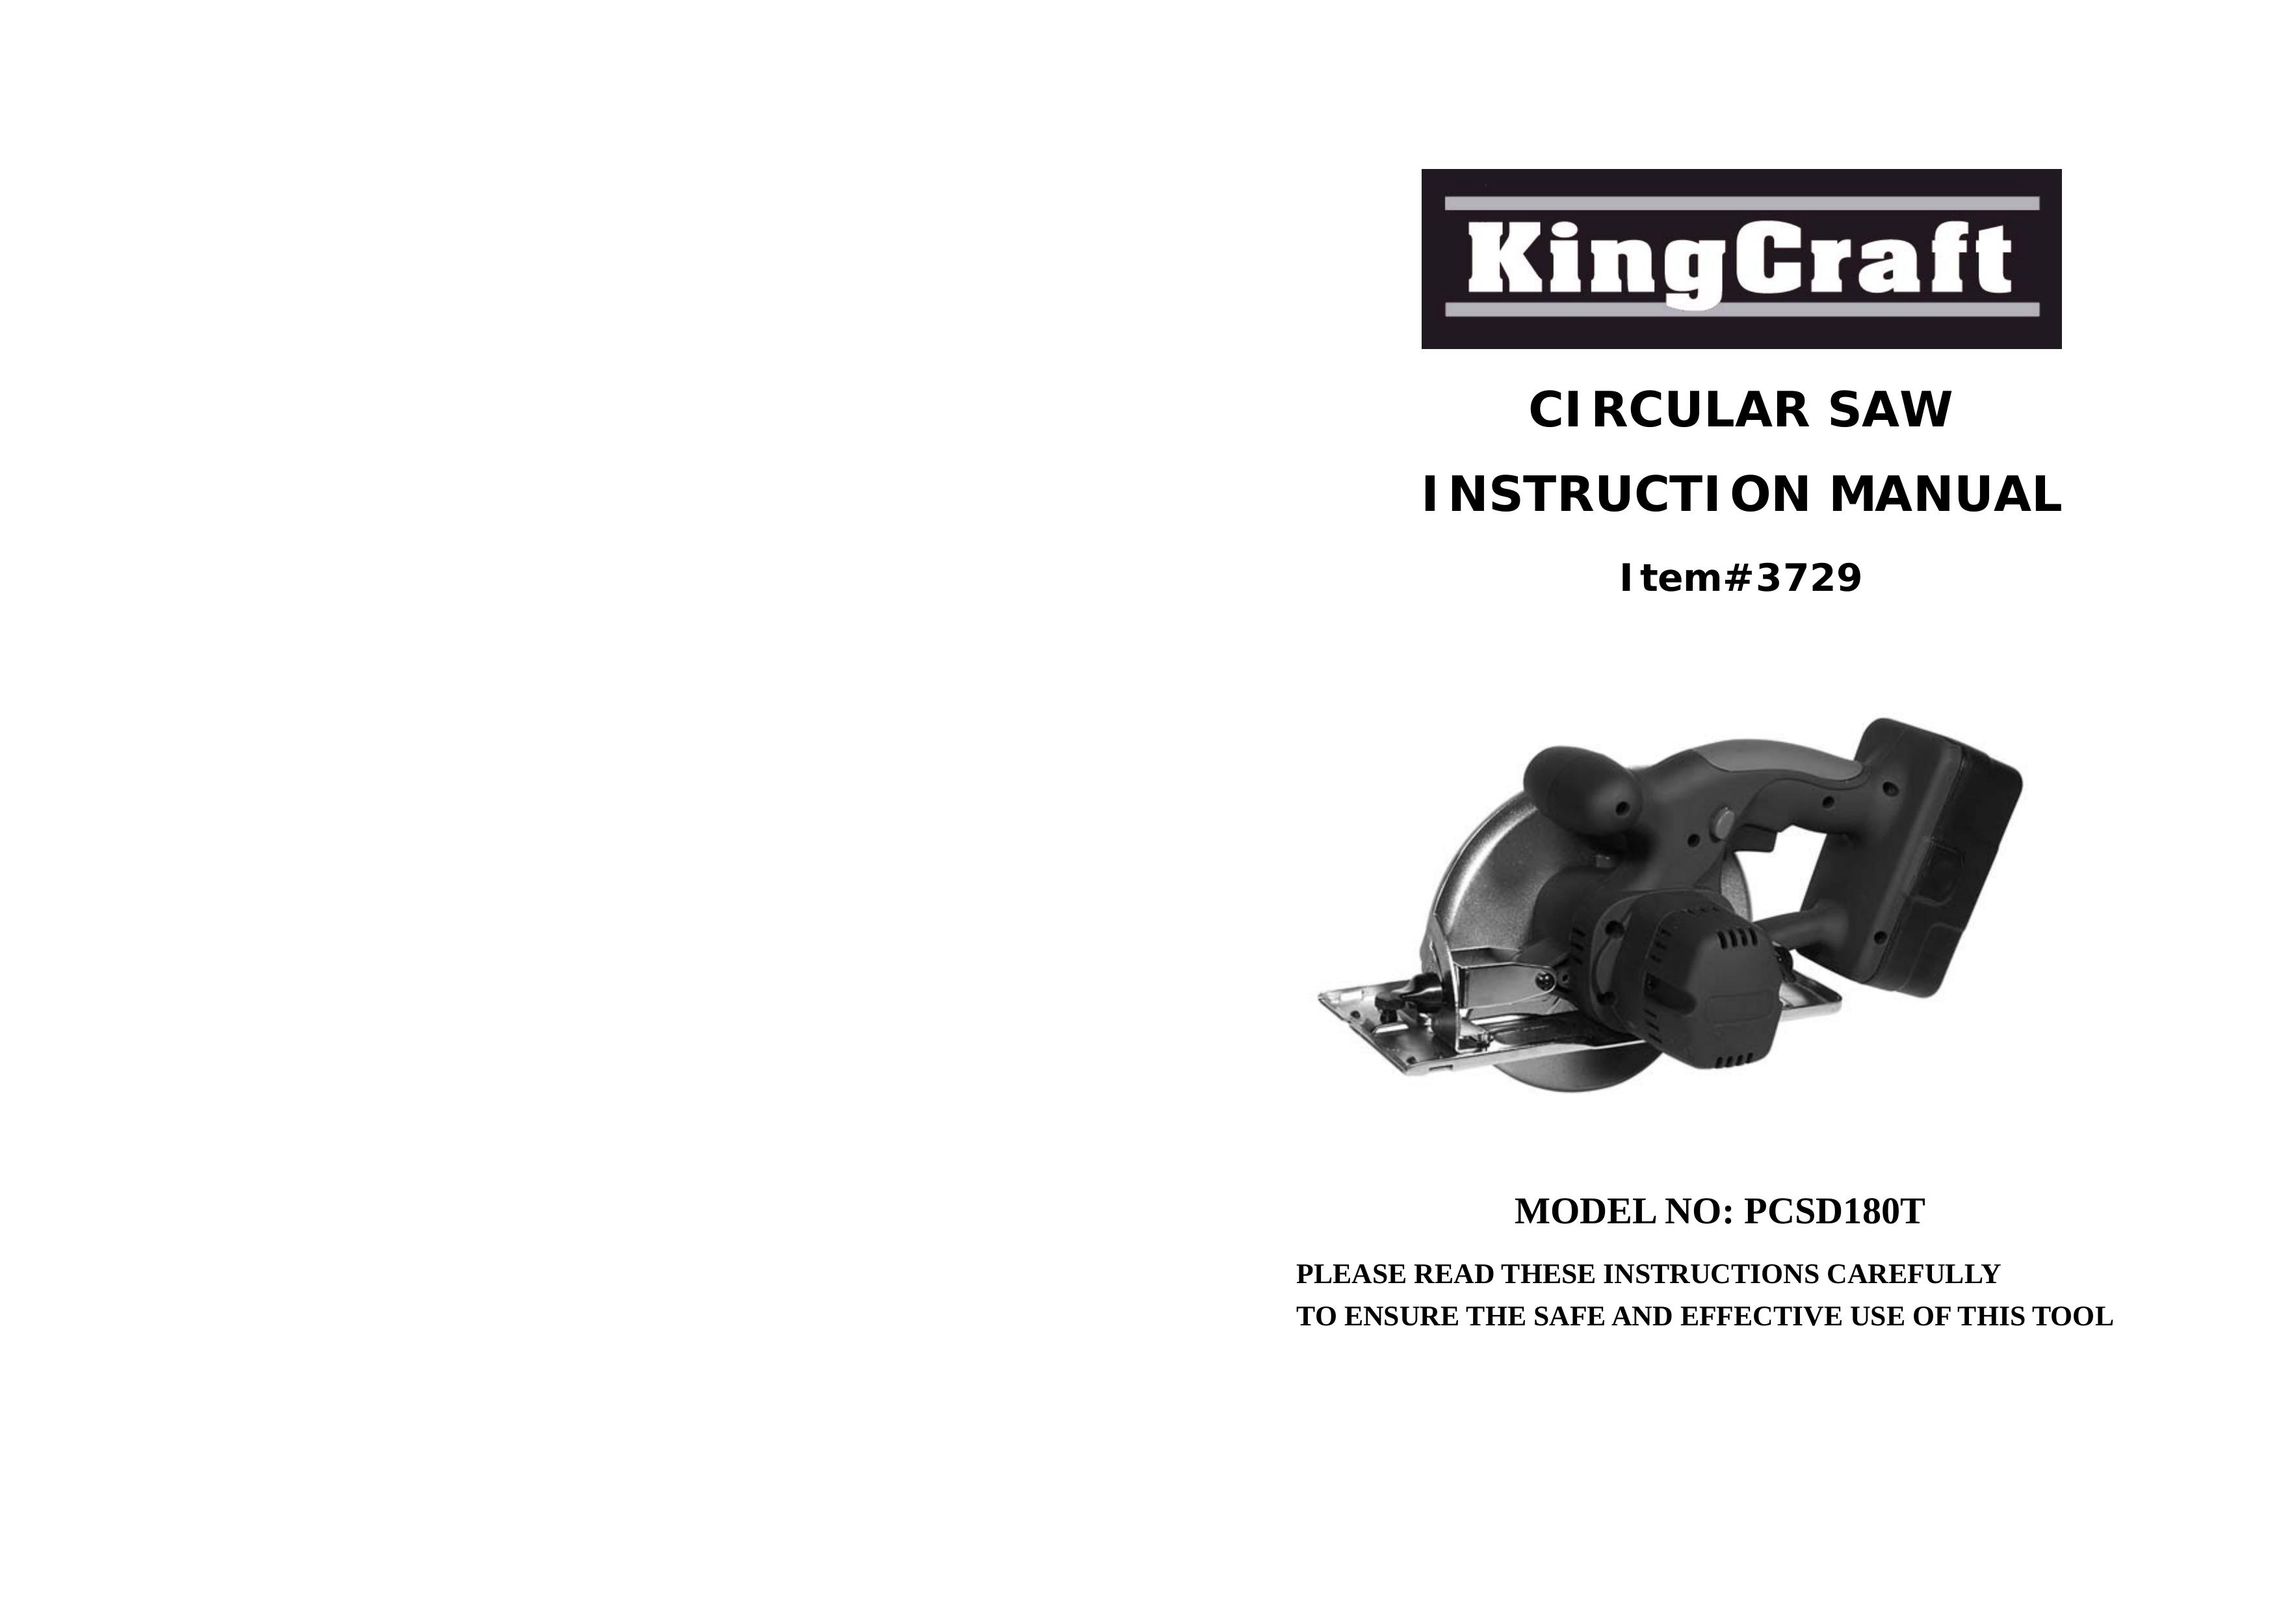 Wachsmuth & Krogmann PCSD180T Saw User Manual